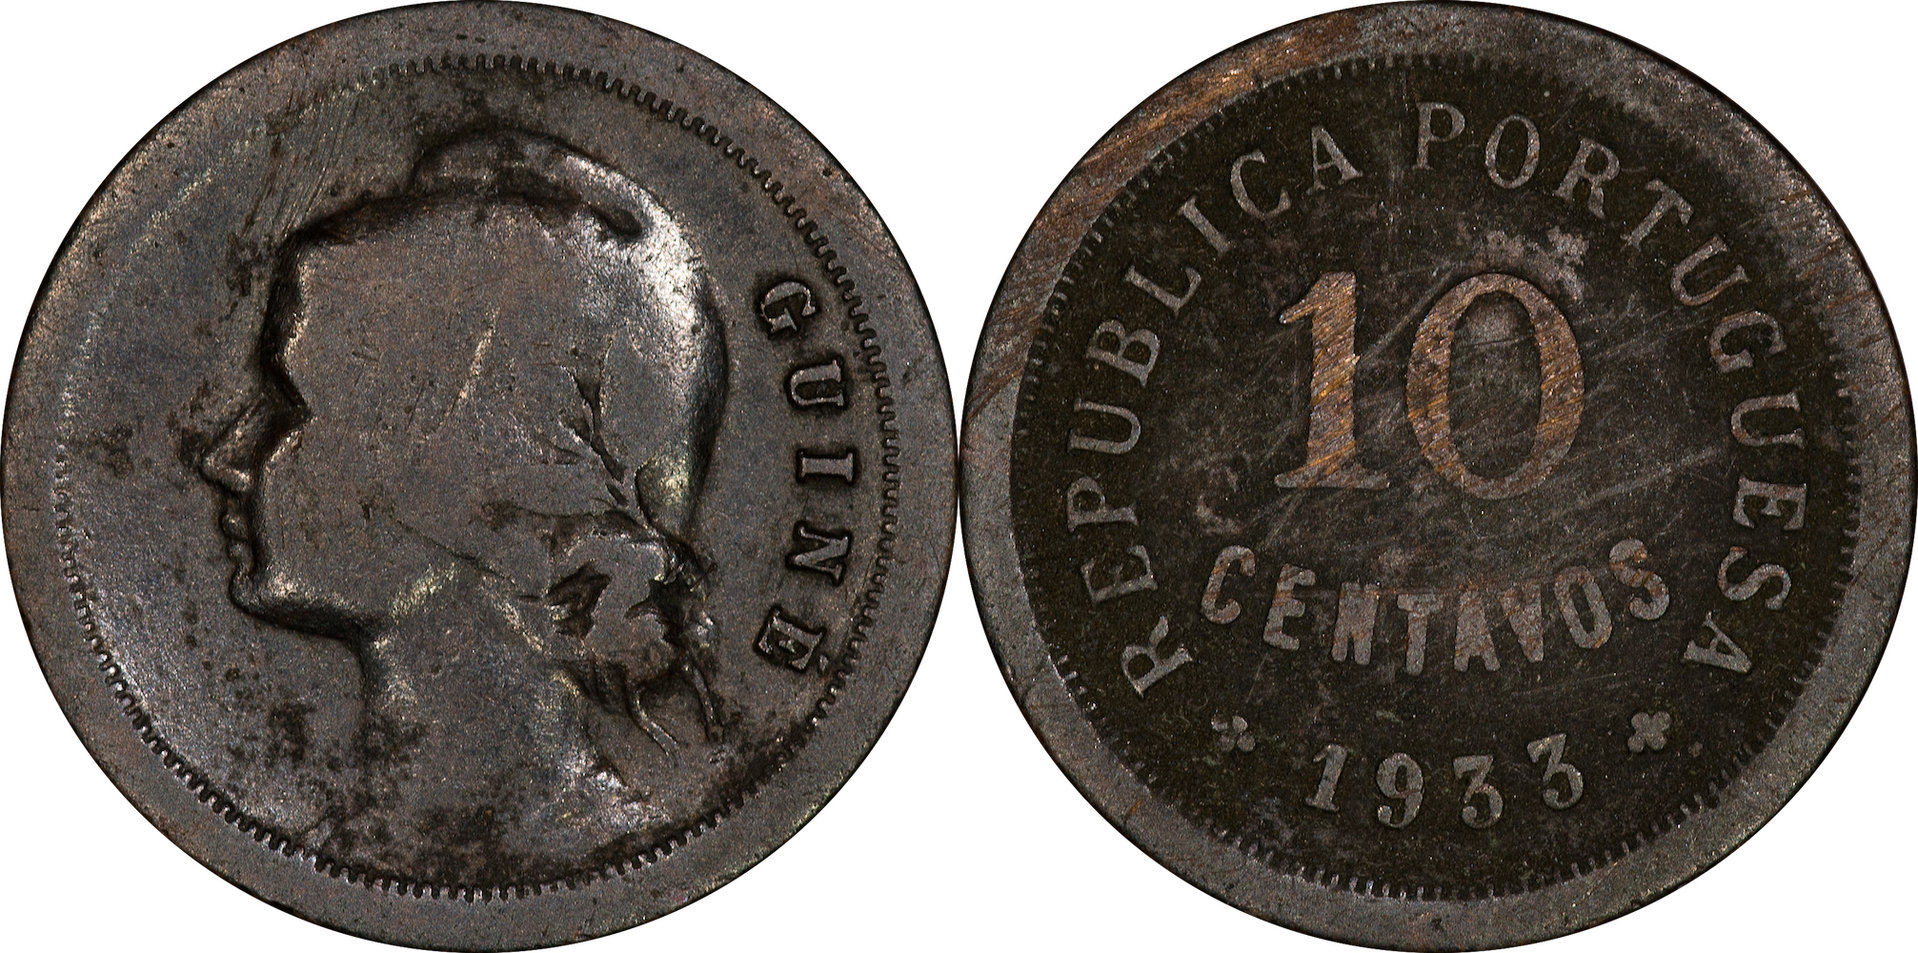 Guinea-Bissau - 1933 10 Centavos.jpg